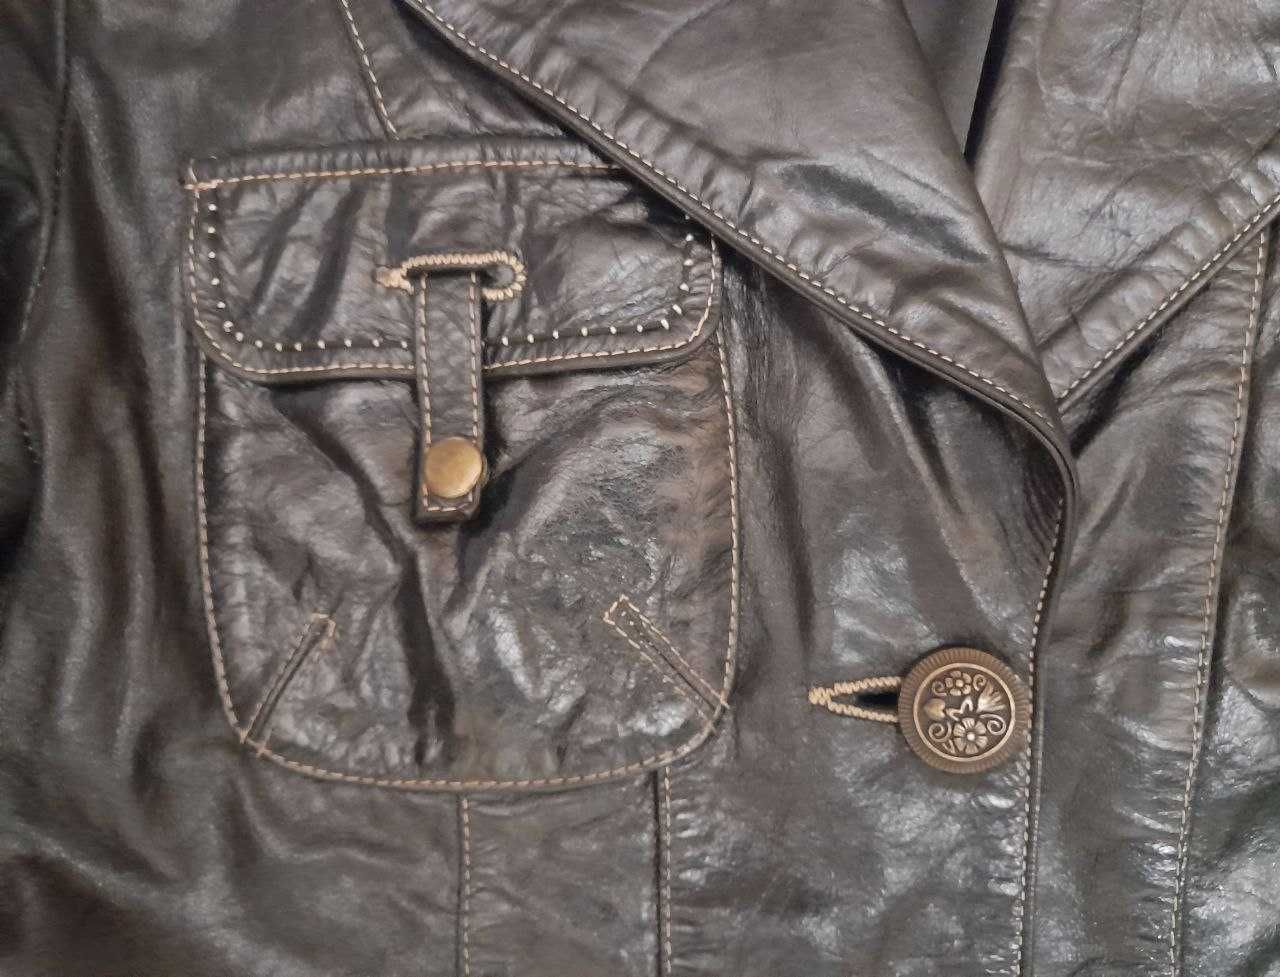 Итальянский кожаный тренч куртка PADOVA S 42 размер